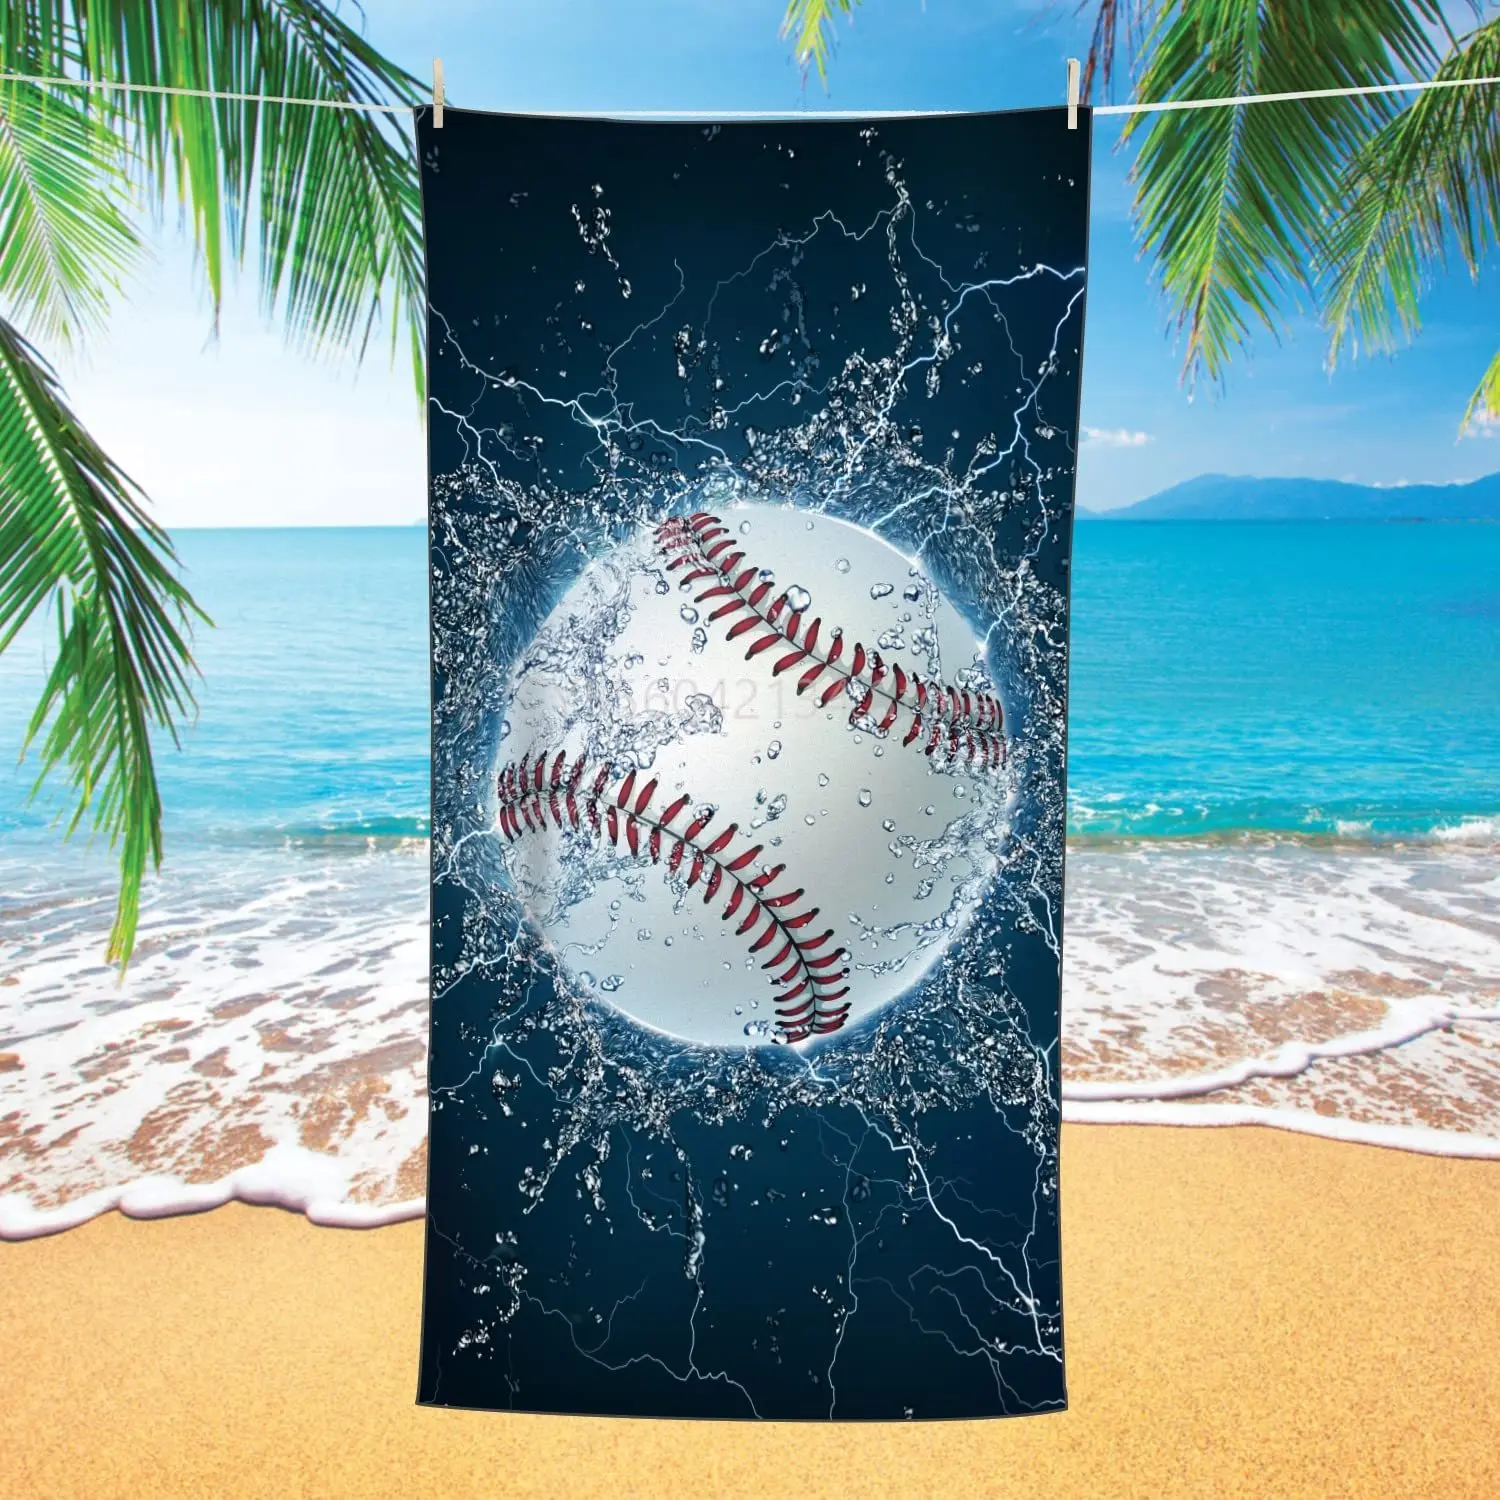 

Пляжное полотенце из микрофибры, быстросохнущее, легкое банное полотенце для плавания, пляжное полотенце с принтом бейсбола, s (бейсбольное ...